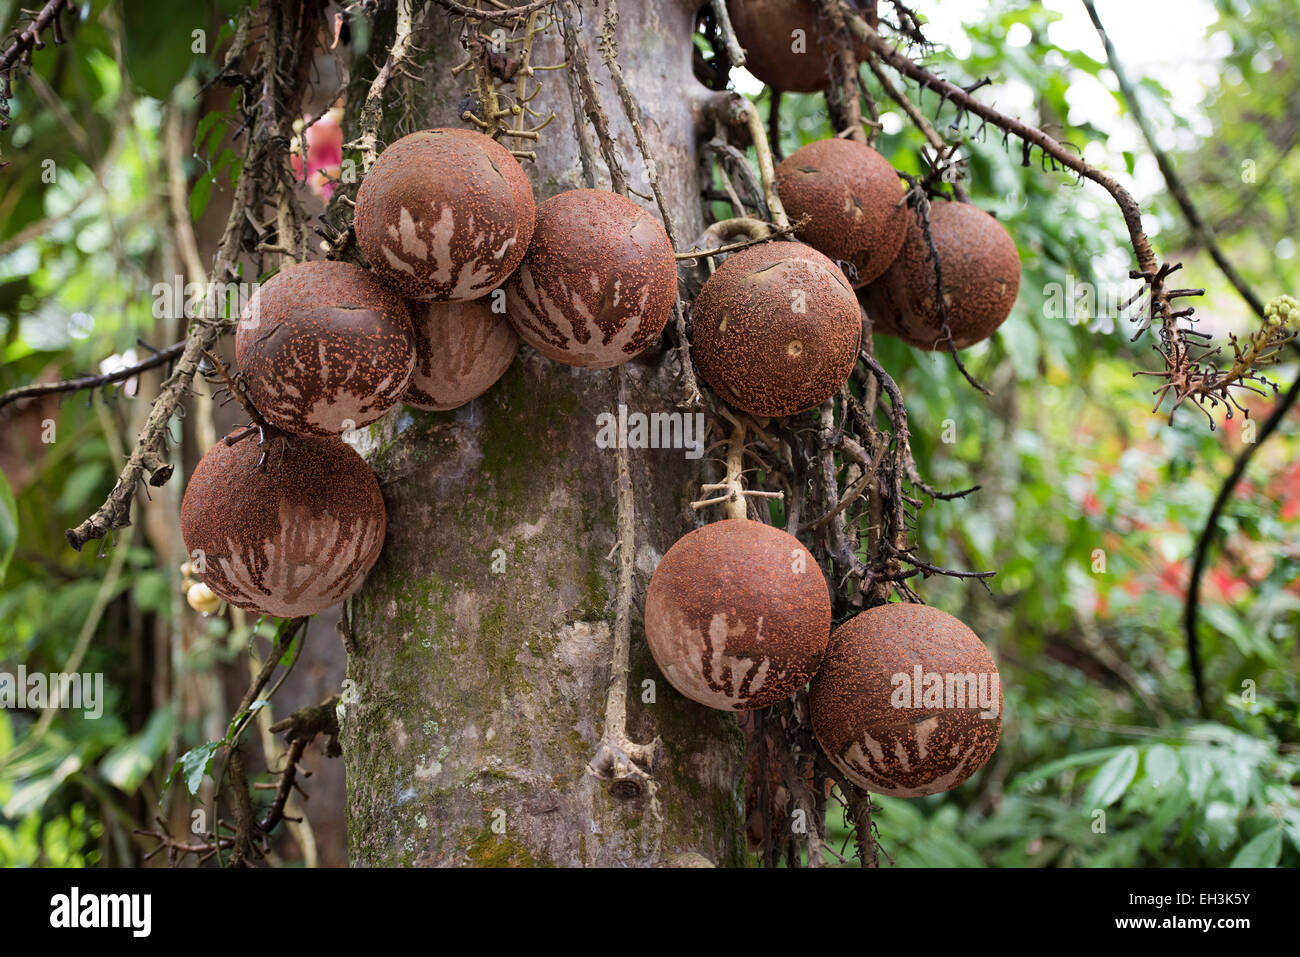 Fruits de l'arbre Cannonball (Couroupita guianensi), Kerala, Inde Banque D'Images